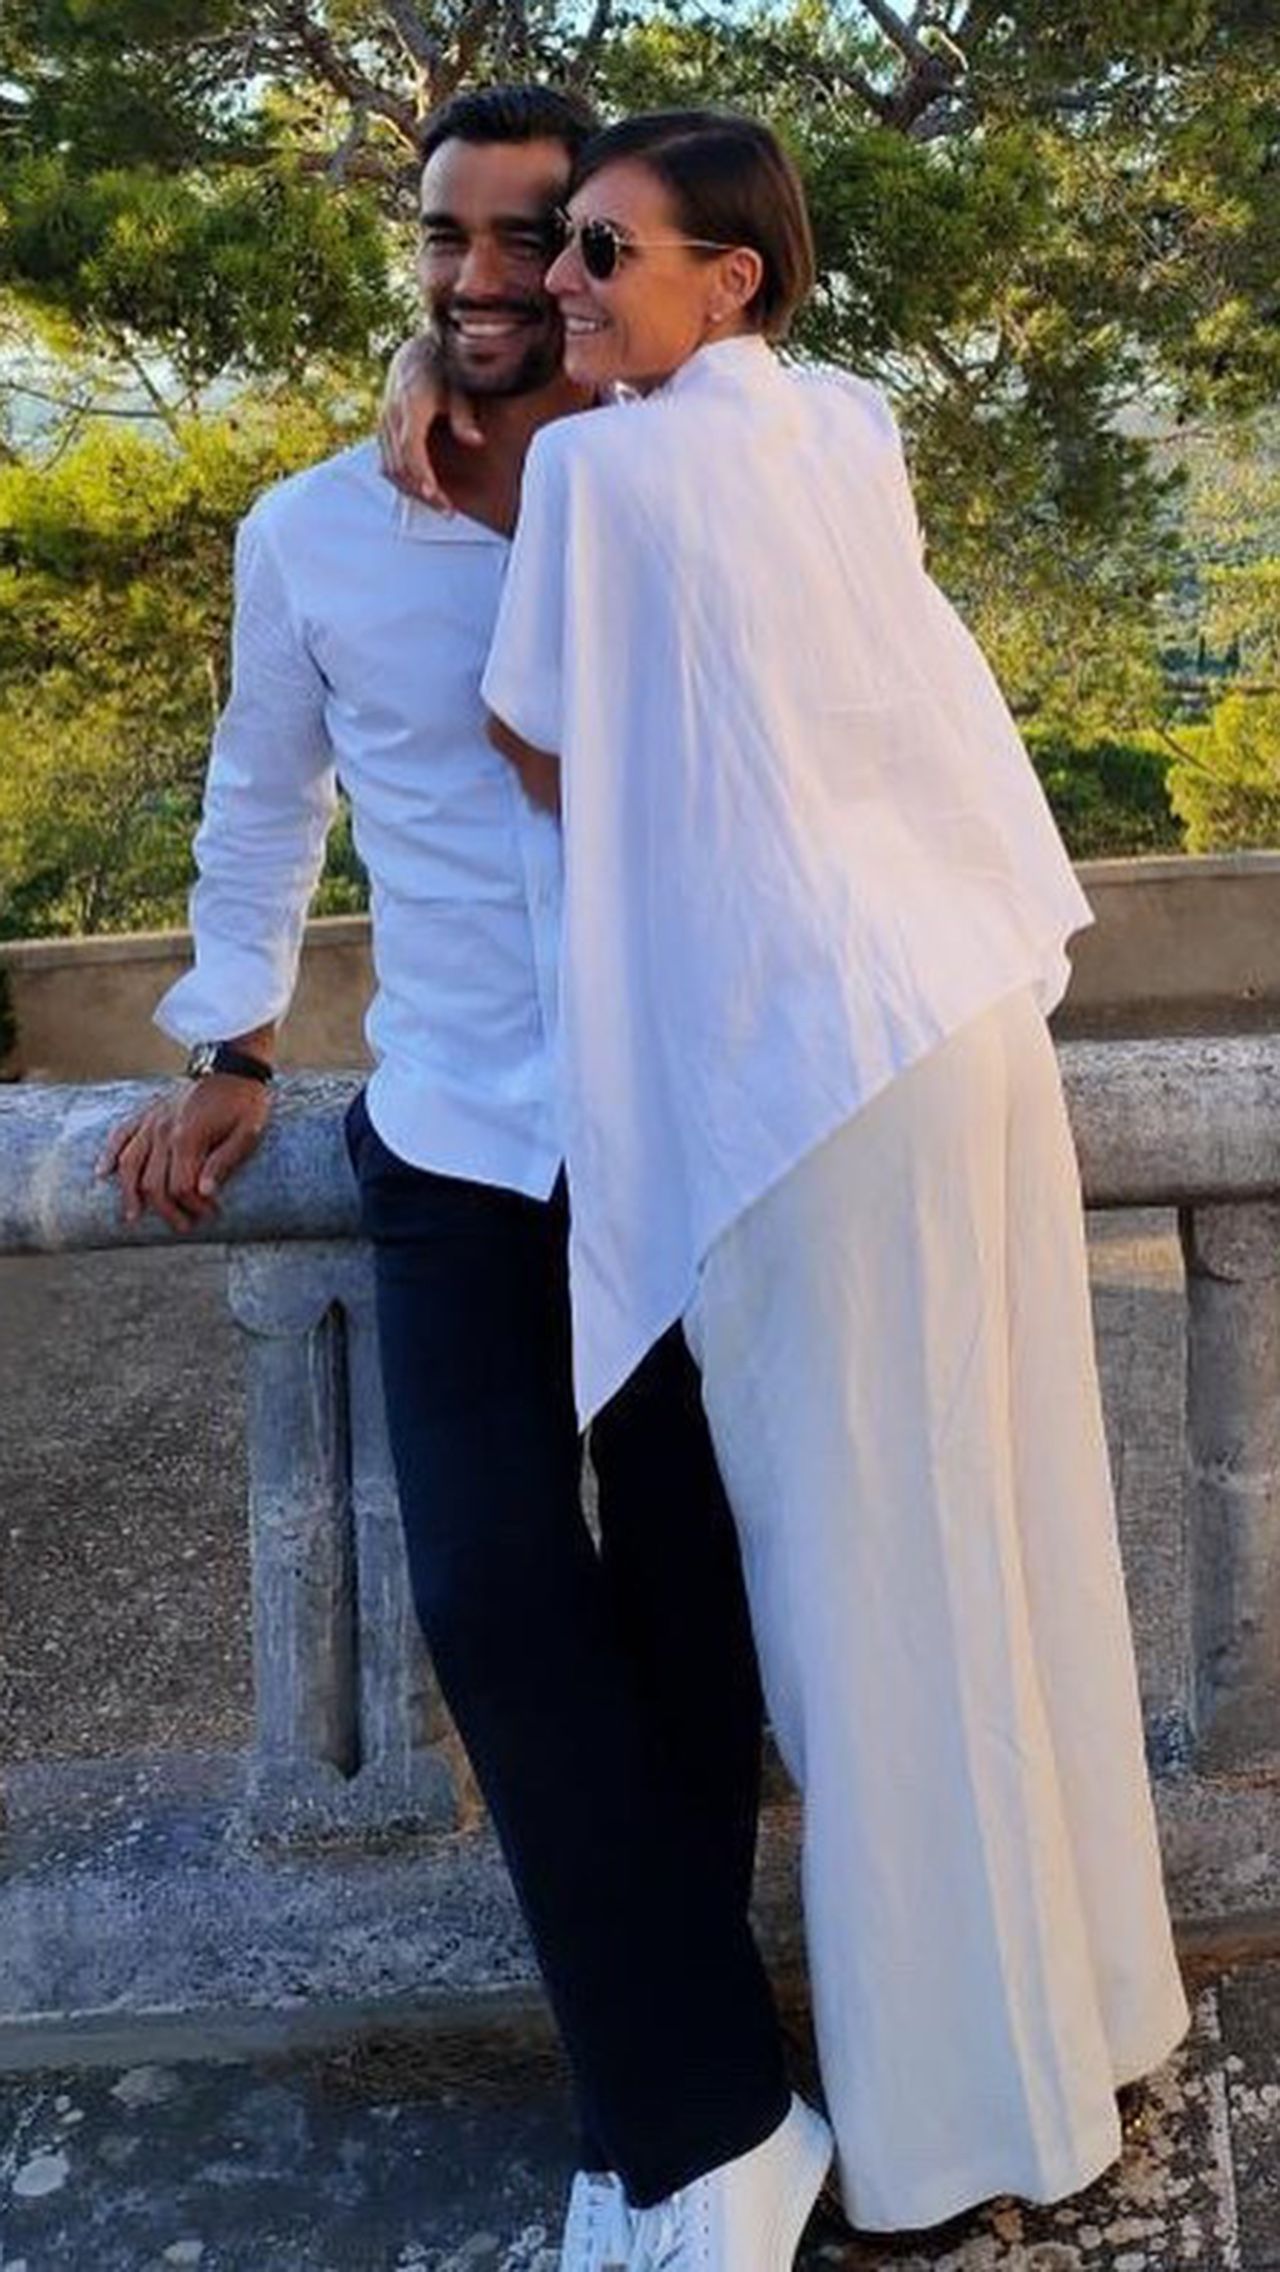 В 2016 году Флавия Пеннетта вышла замуж за теннисиста Фабио Фоньини. Флавия старше мужа на пять лет, и долгое время они были просто друзьями.